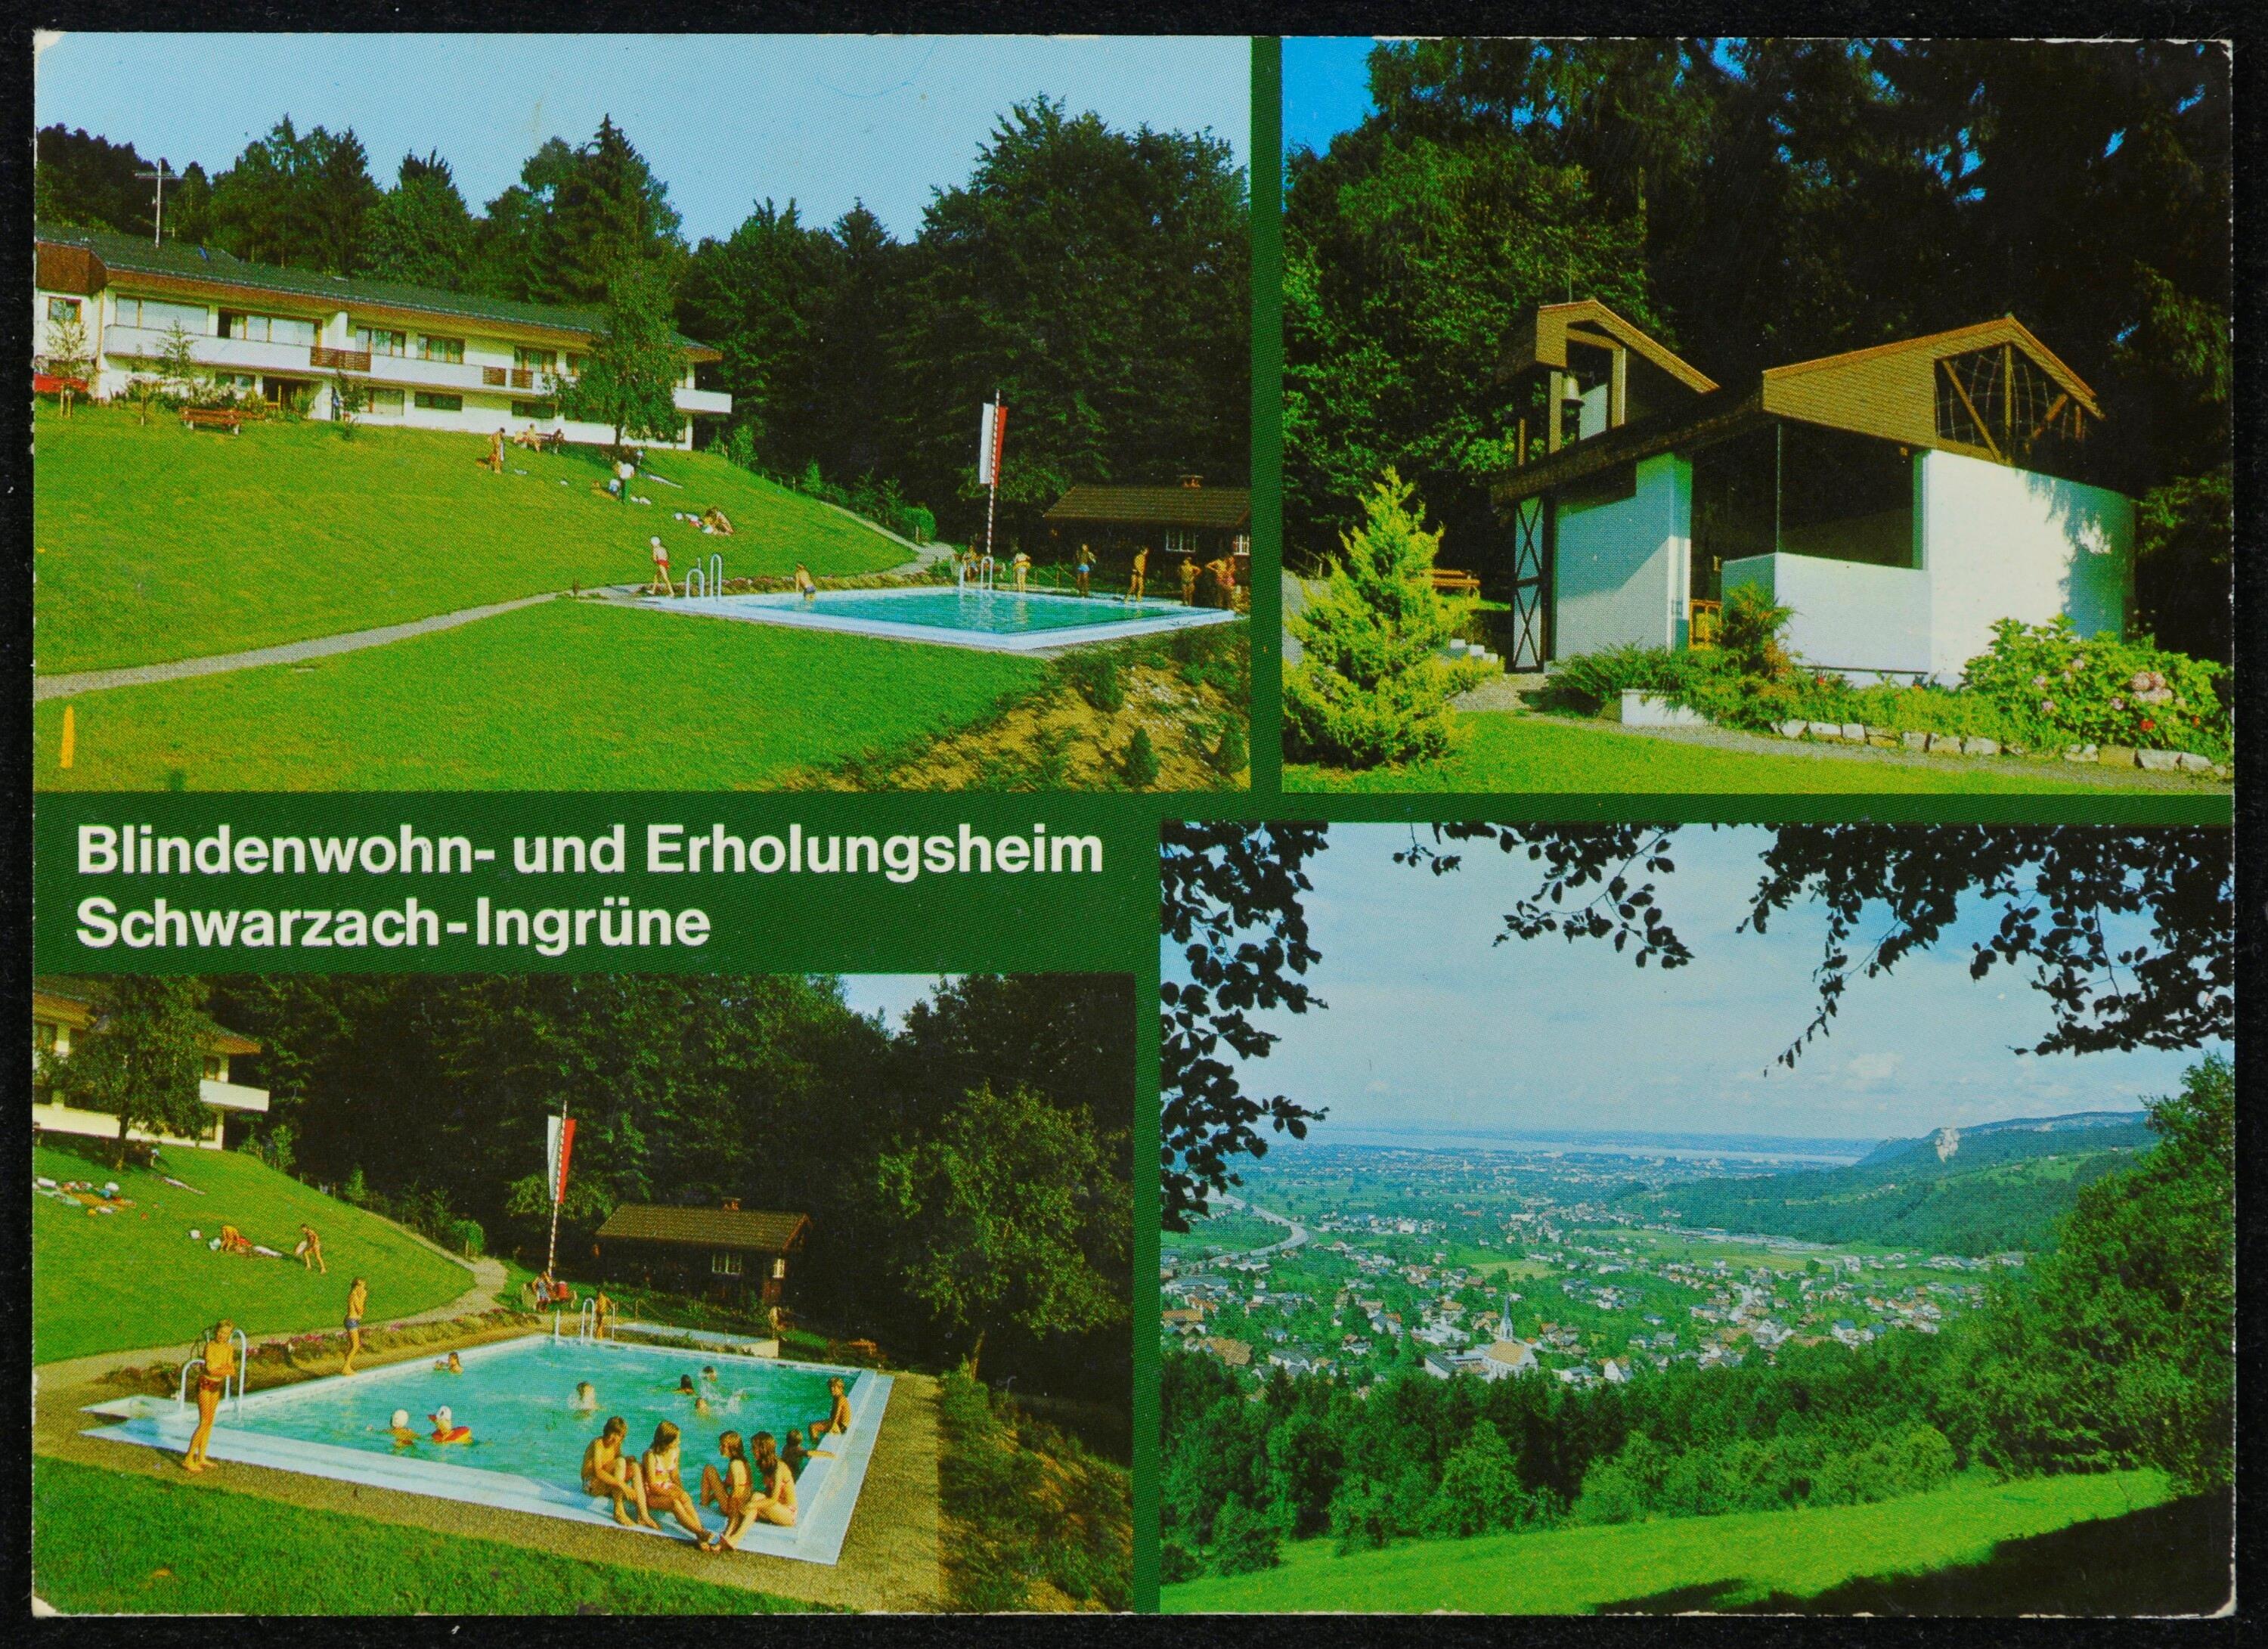 Blindenwohn- und Erholungsheim Schwarzach-Ingrüne></div>


    <hr>
    <div class=